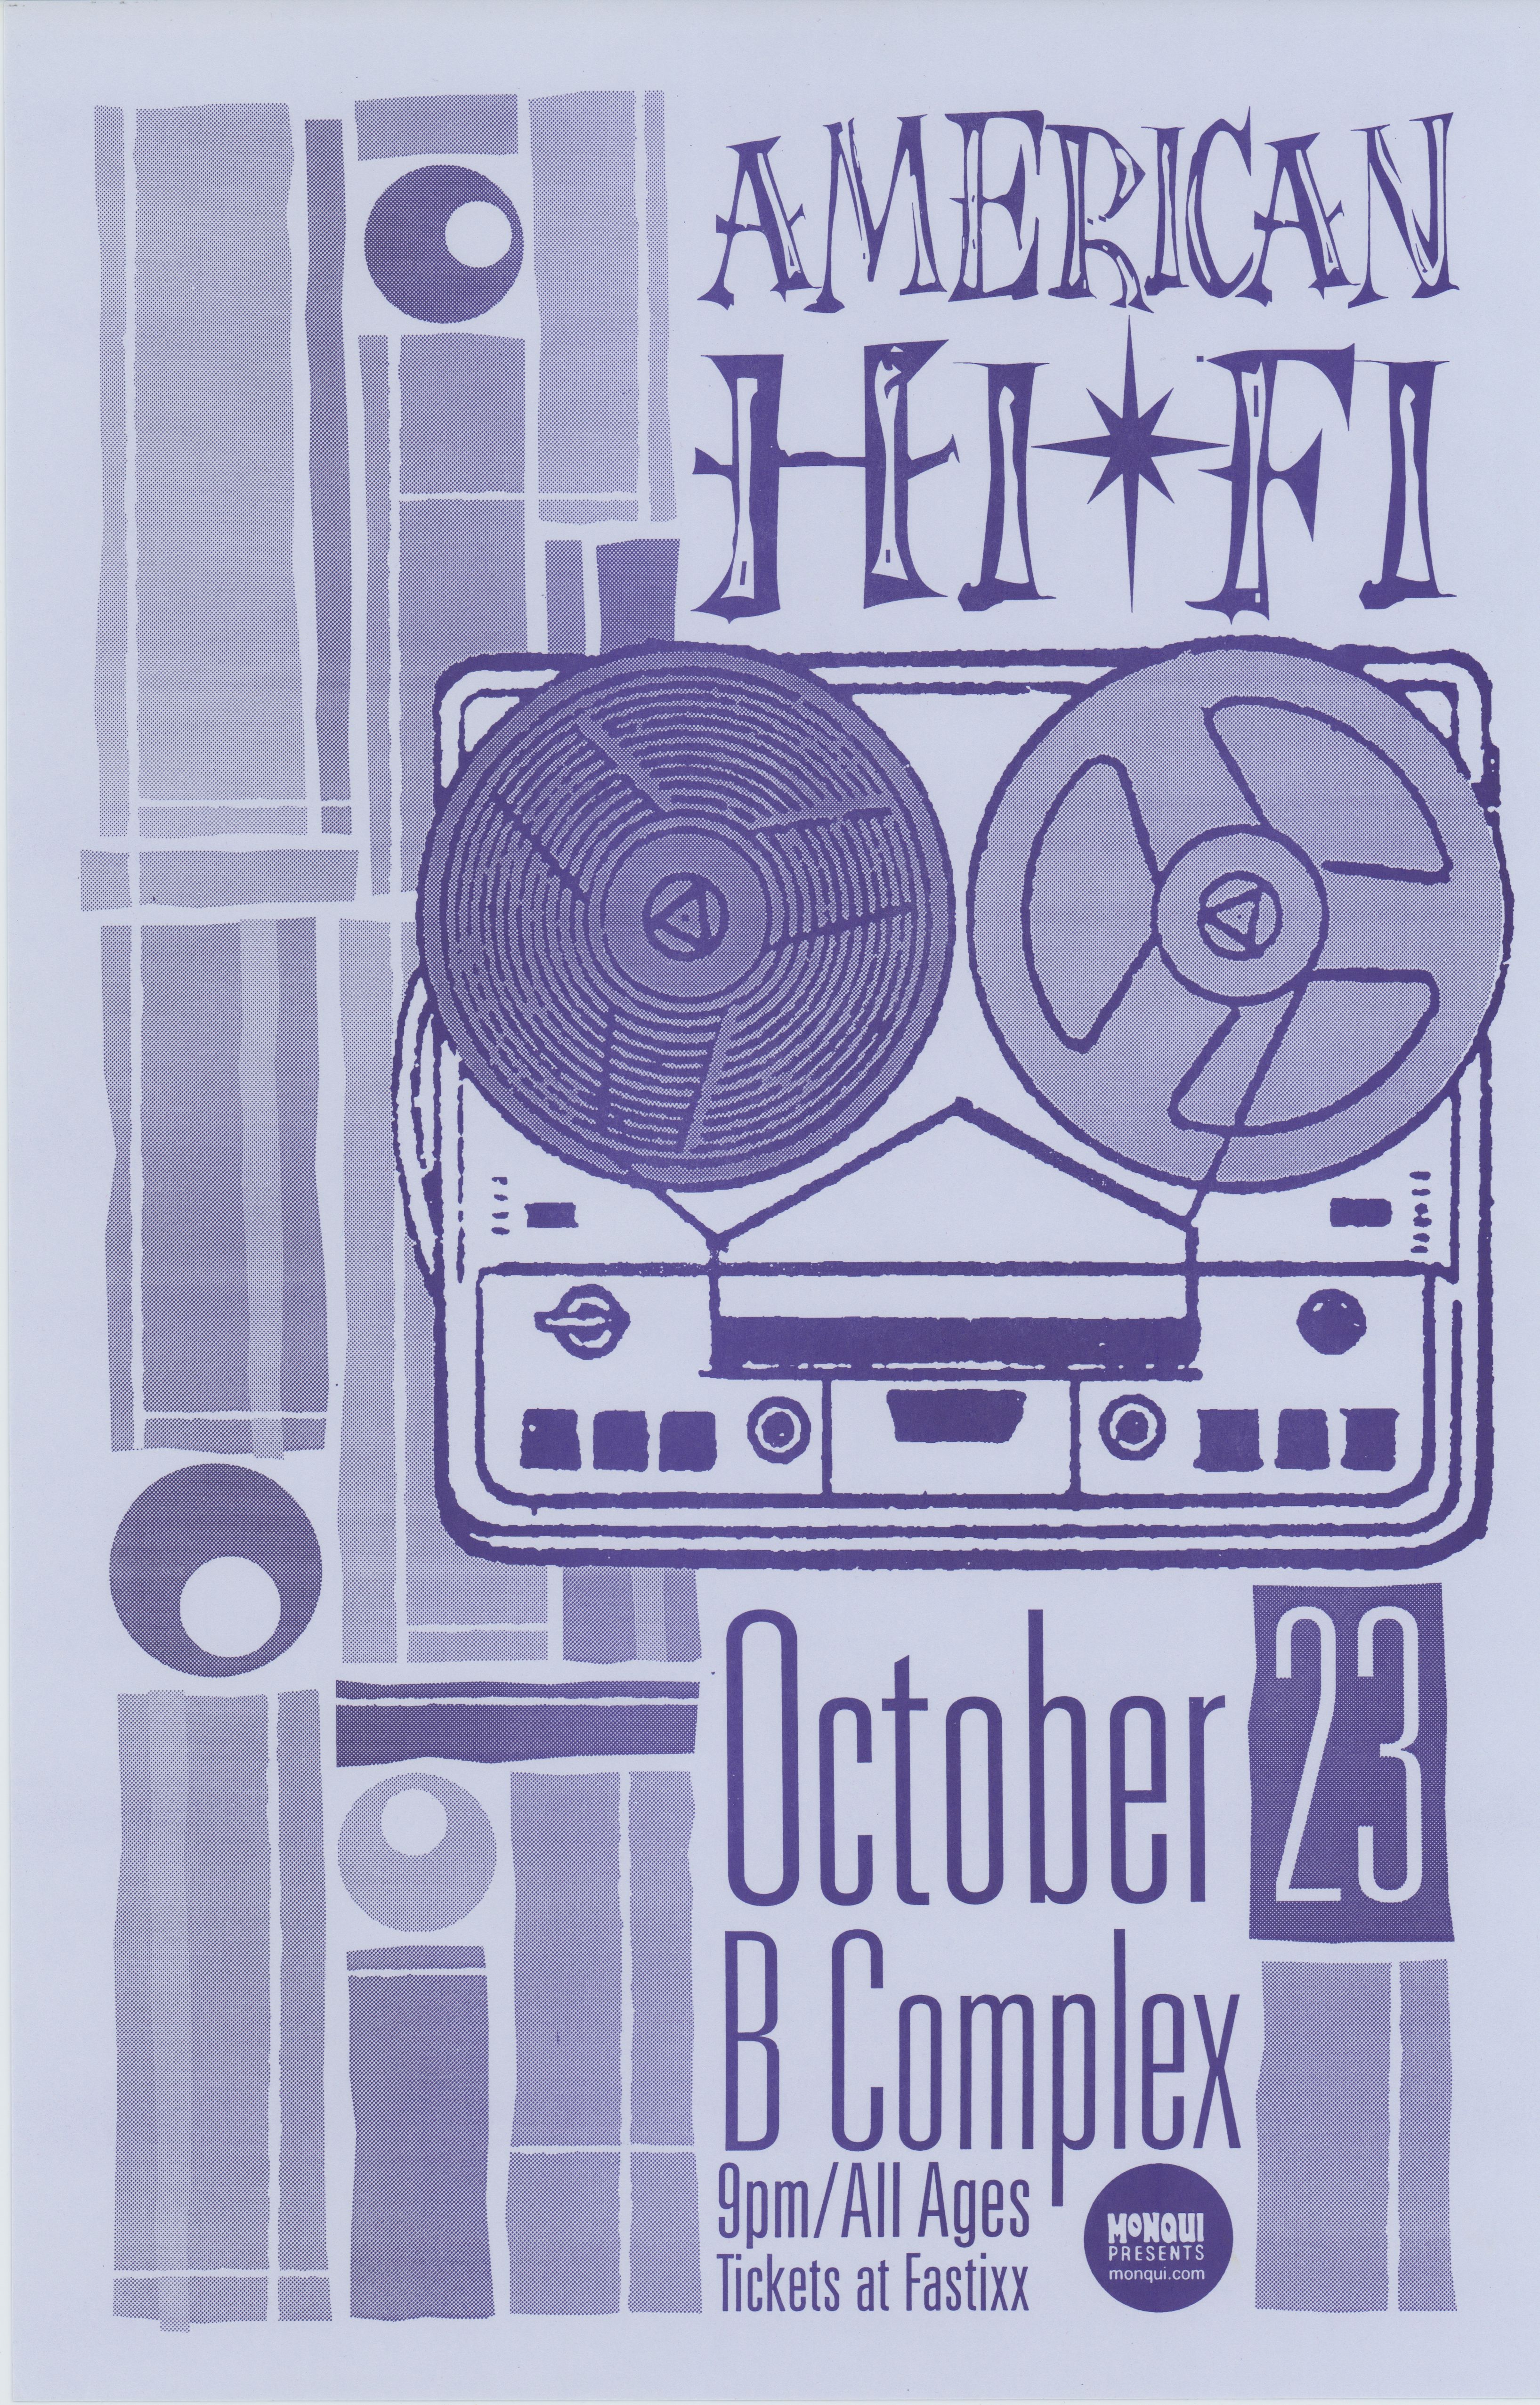 MXP-140.10 American Hi-Fi B Complex 1998 Concert Poster